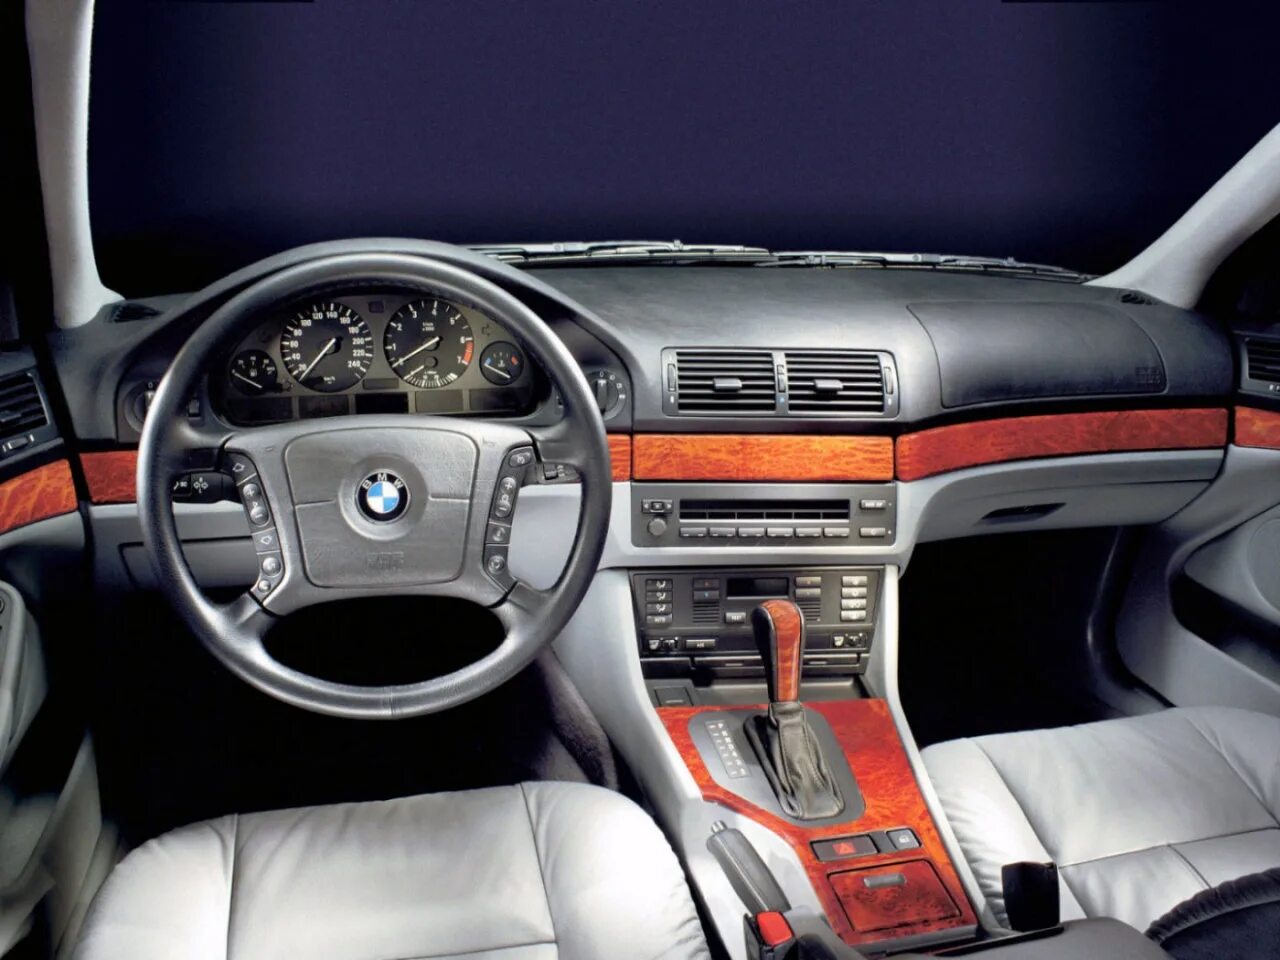 2.5 л 170 л с. БМВ 525 е39 салон. BMW 5 e39 1995. BMW 5 e39 2000. BMW e39 Touring.